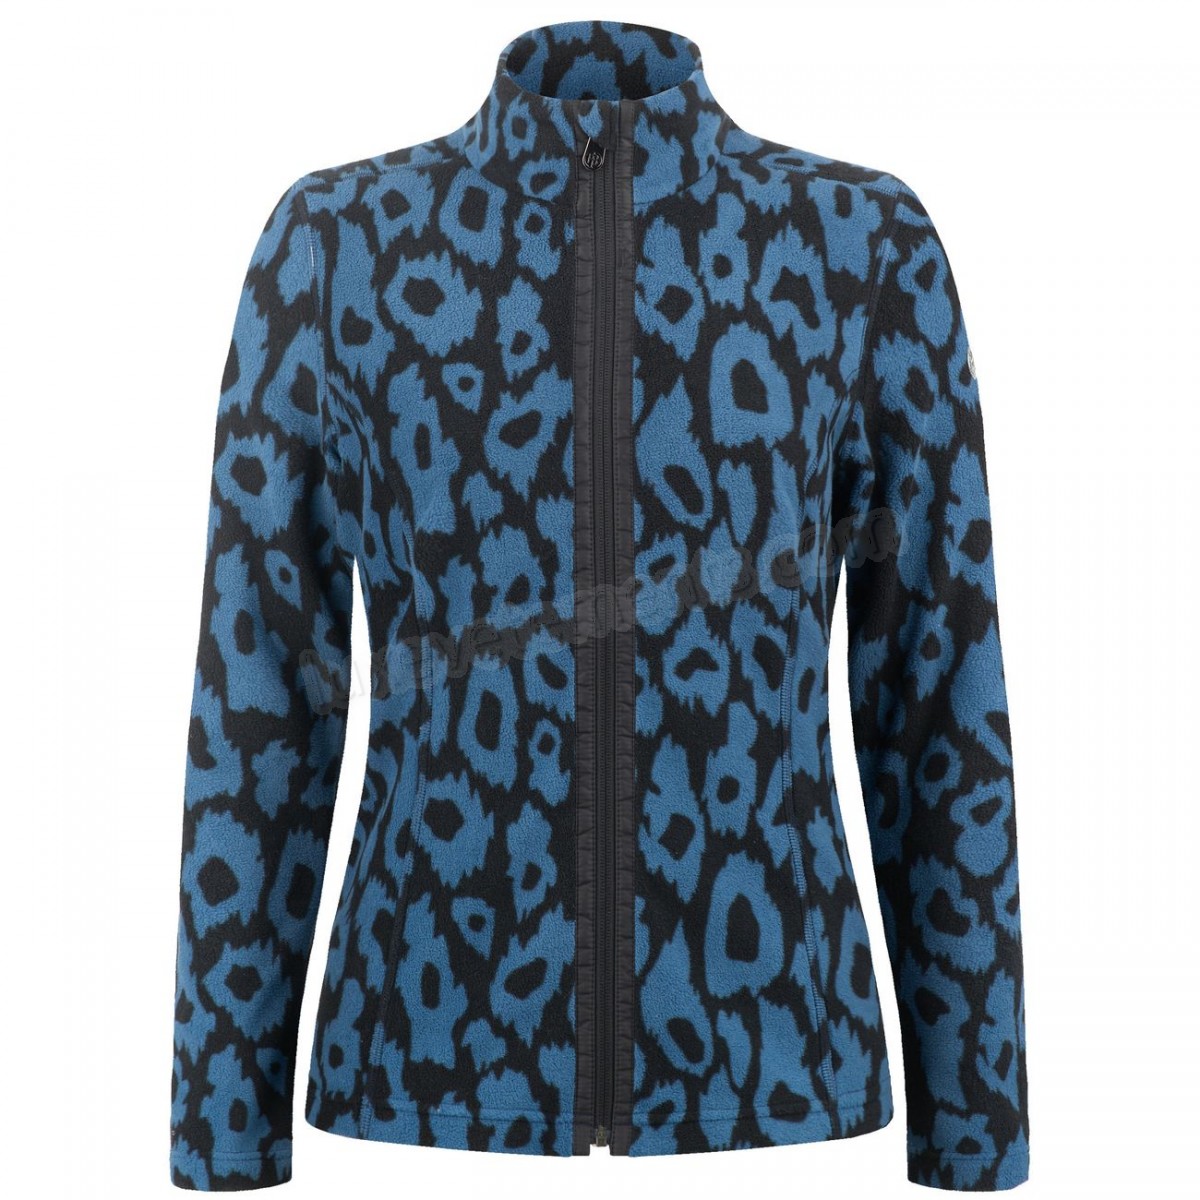 Poivre Blanc-Sports d'hiver femme POIVRE BLANC Veste Polaire Poivre Blanc Fleece Jacket 1500 Panther Blue Femme Vente en ligne - -1